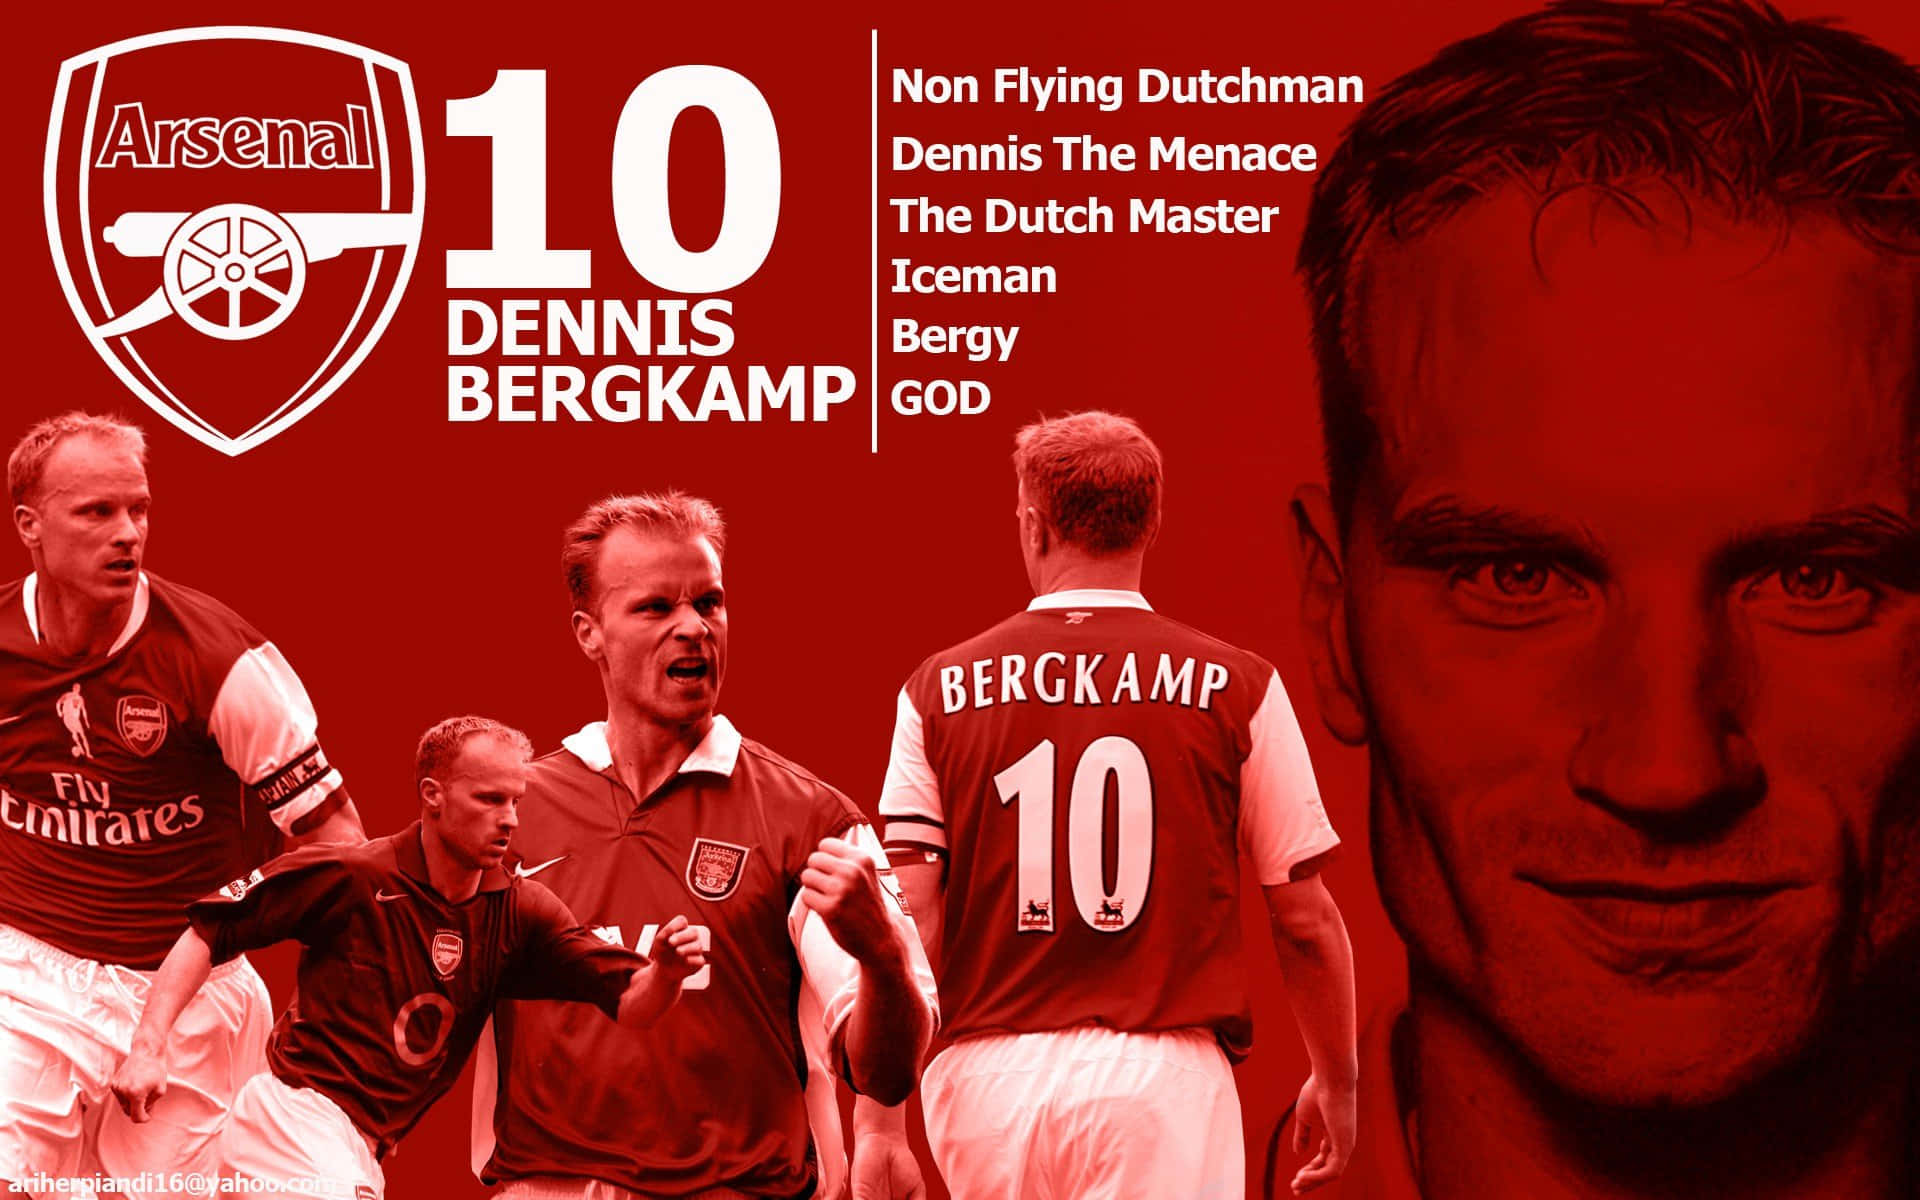 Dennisbergkamp Arsenal Fc Poster Spitznamen. Wallpaper